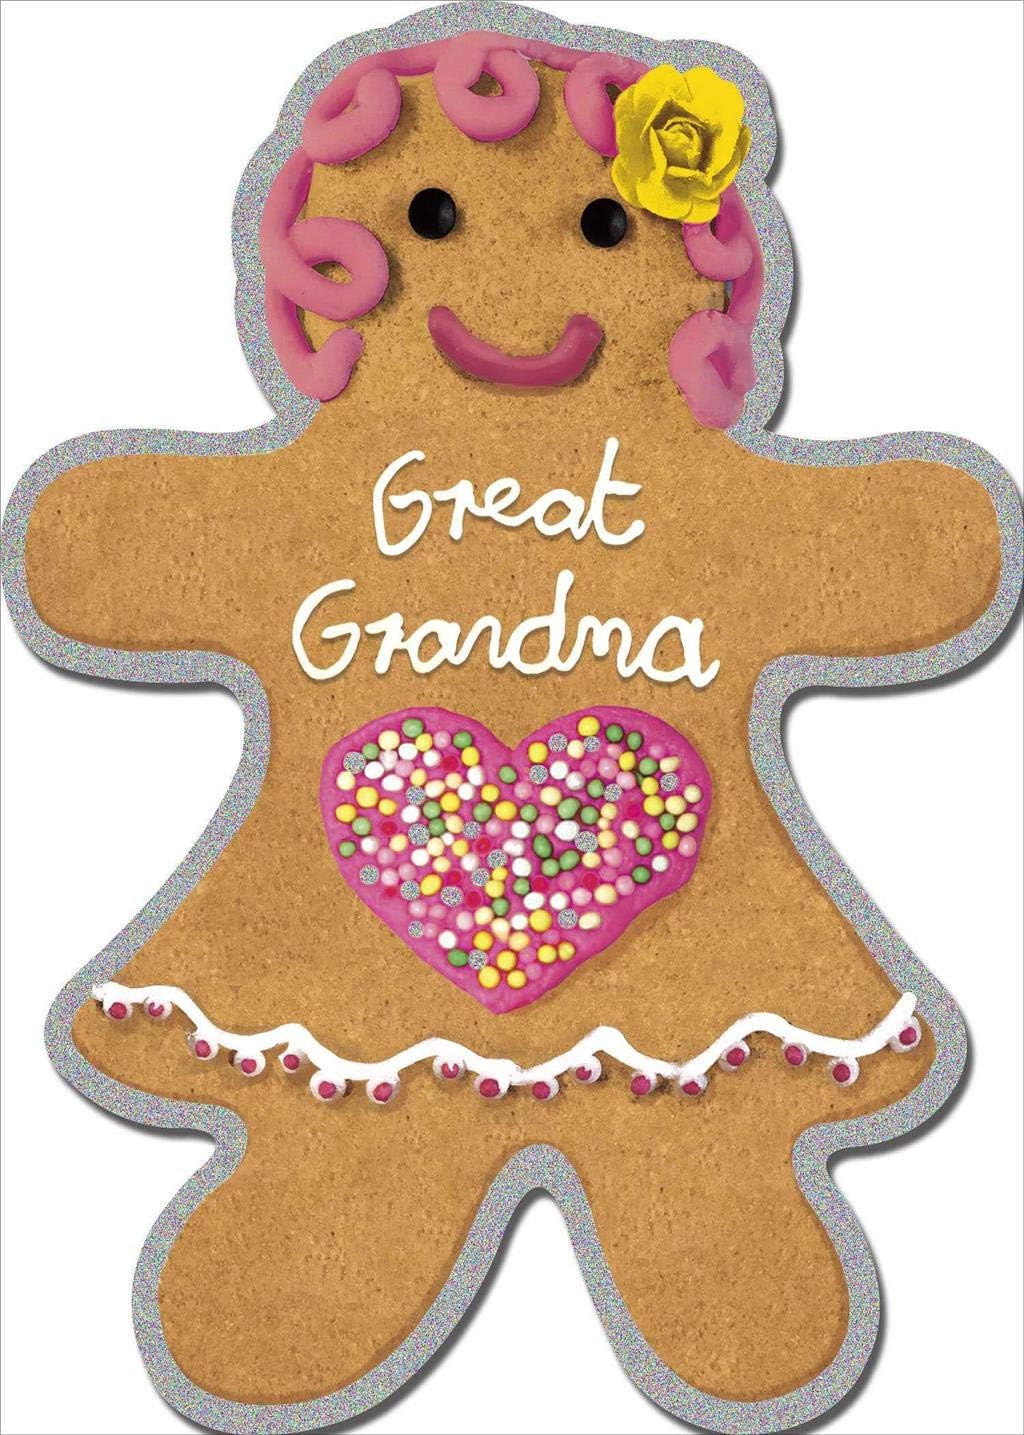 Great Grandma - Ginger Bread